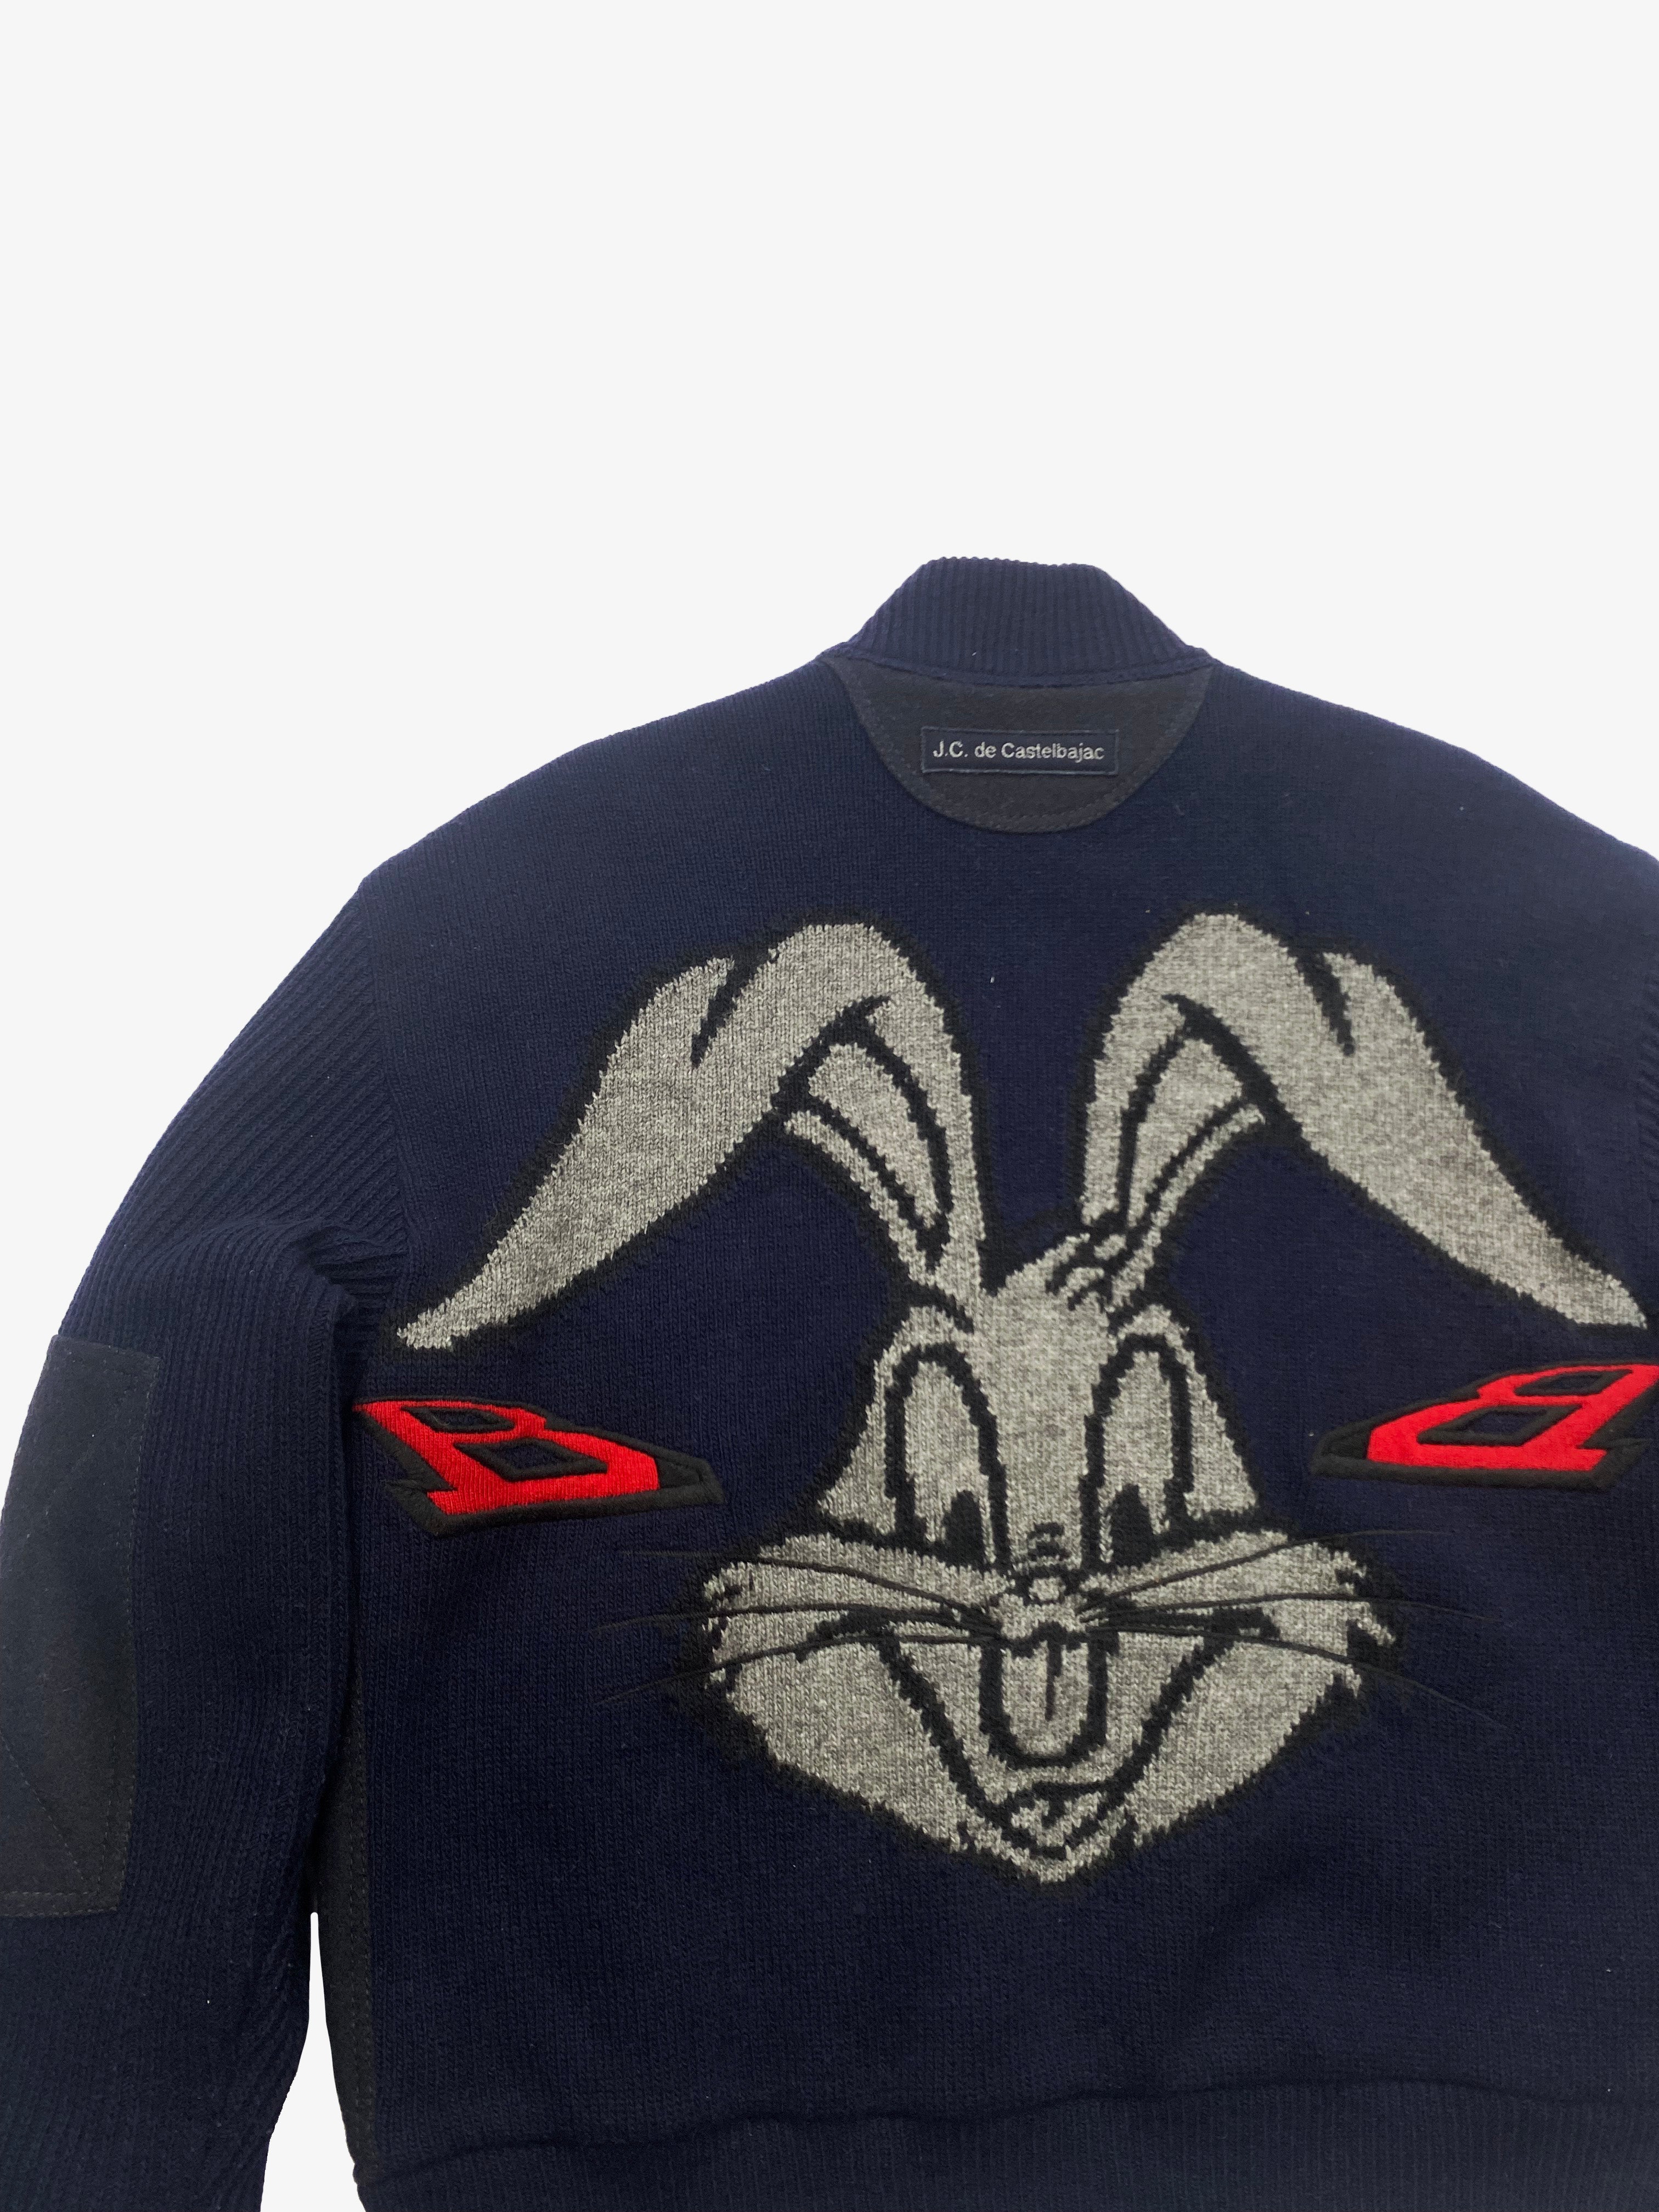 Castelbajac Bugs Bunny Wool Zip Up Circa 1999